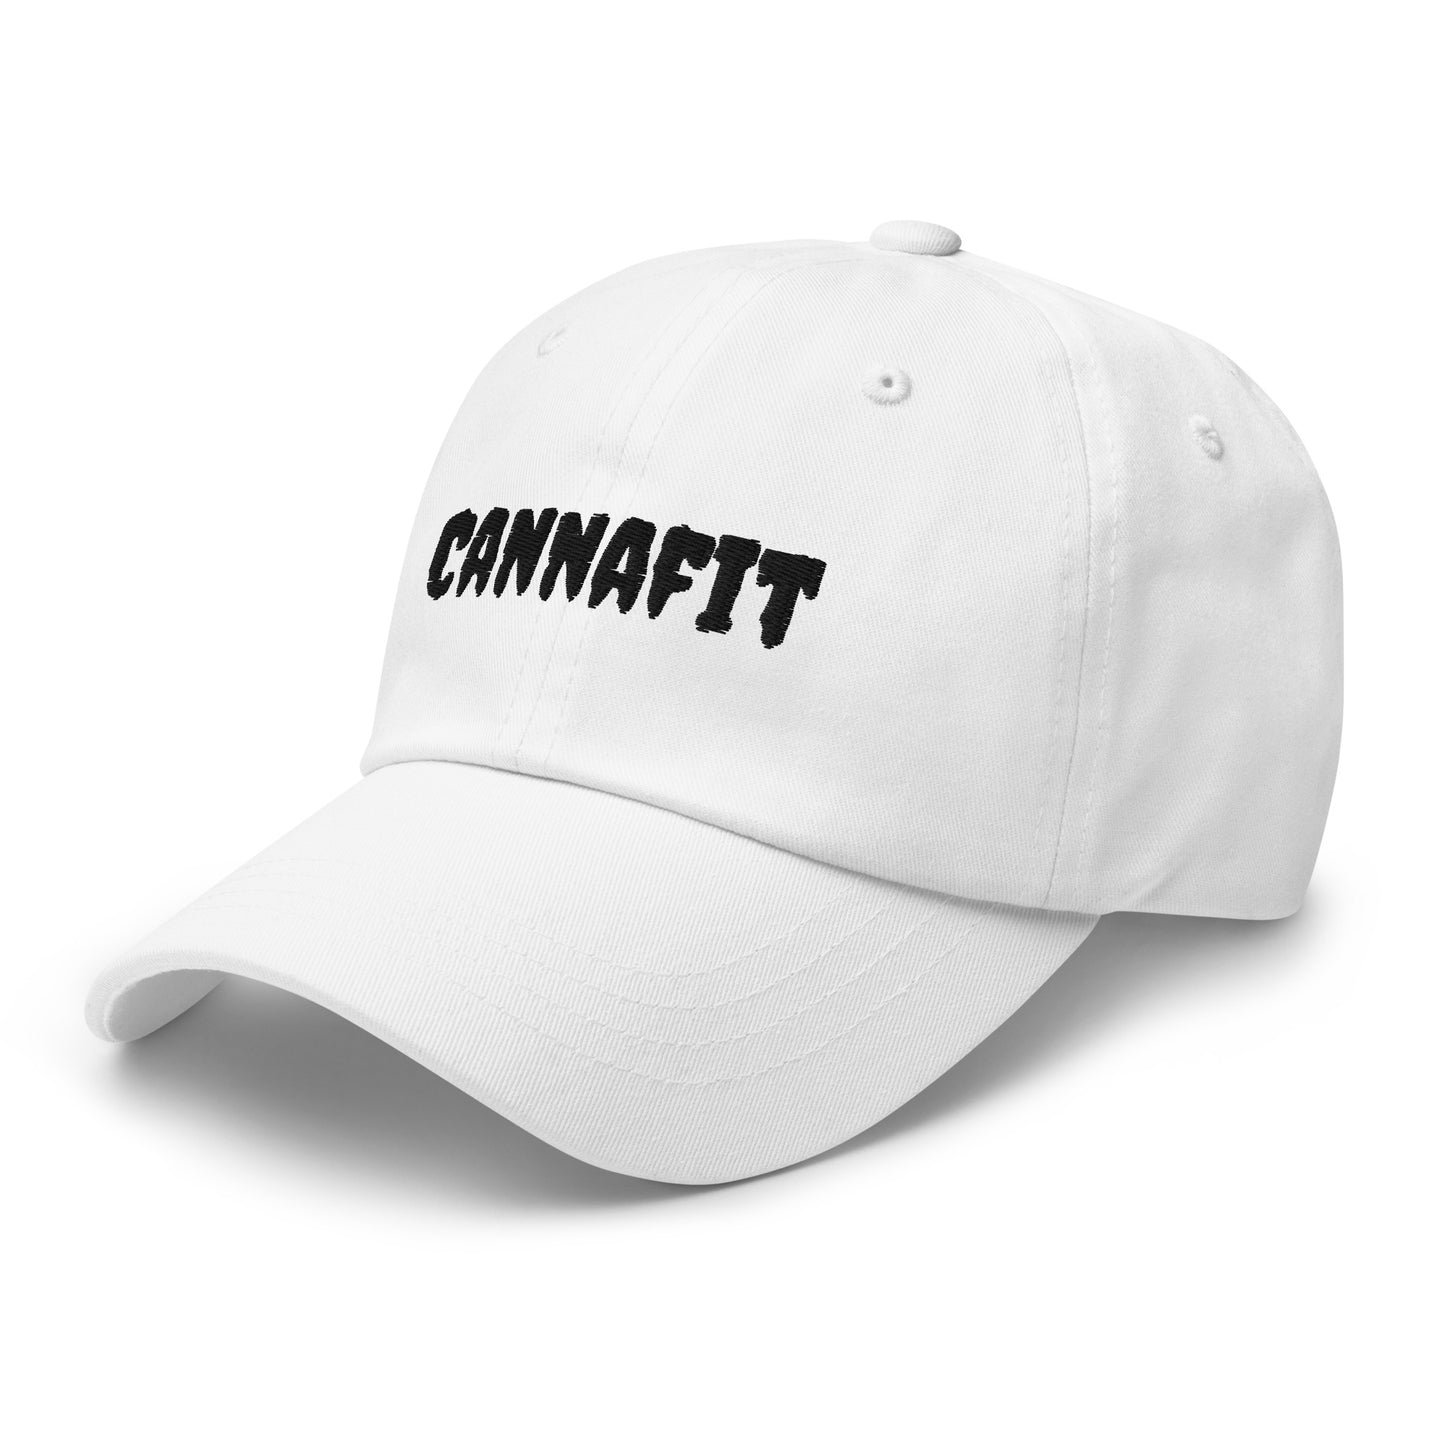 Cannafit Dad Hat